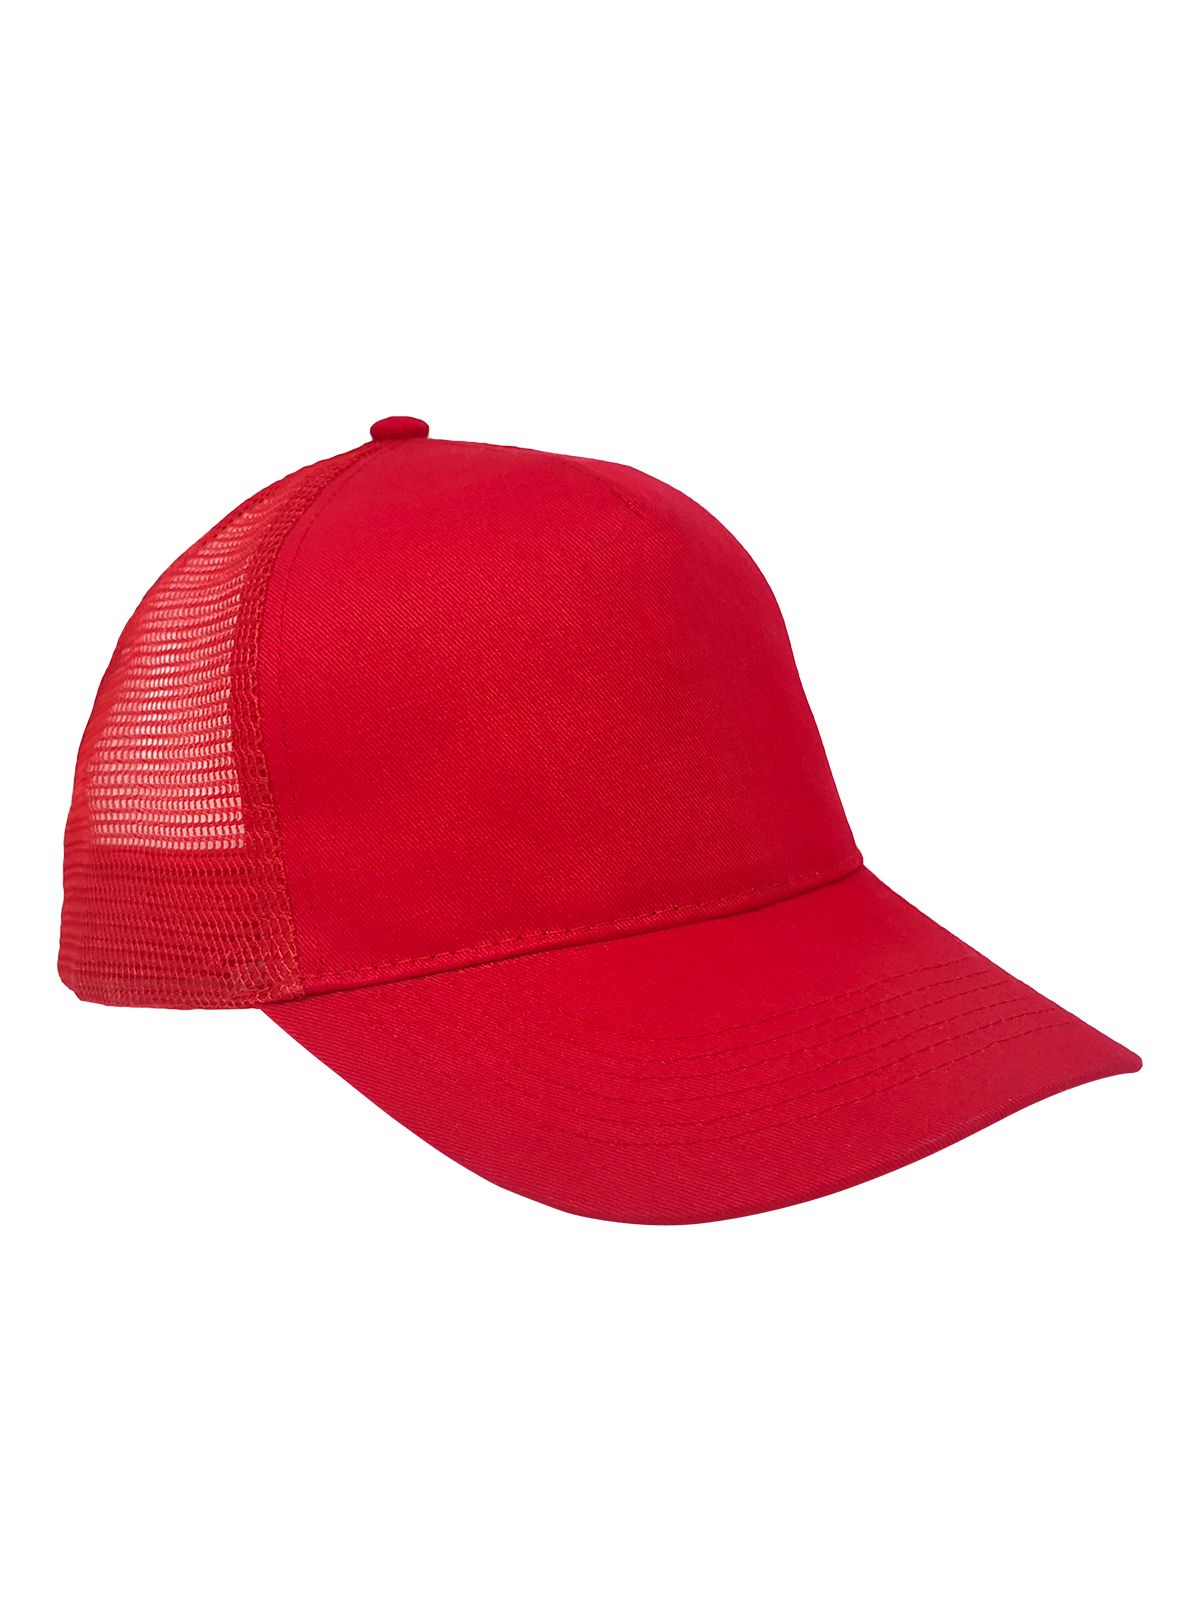 mesh-cotton-cap-classic-red.webp